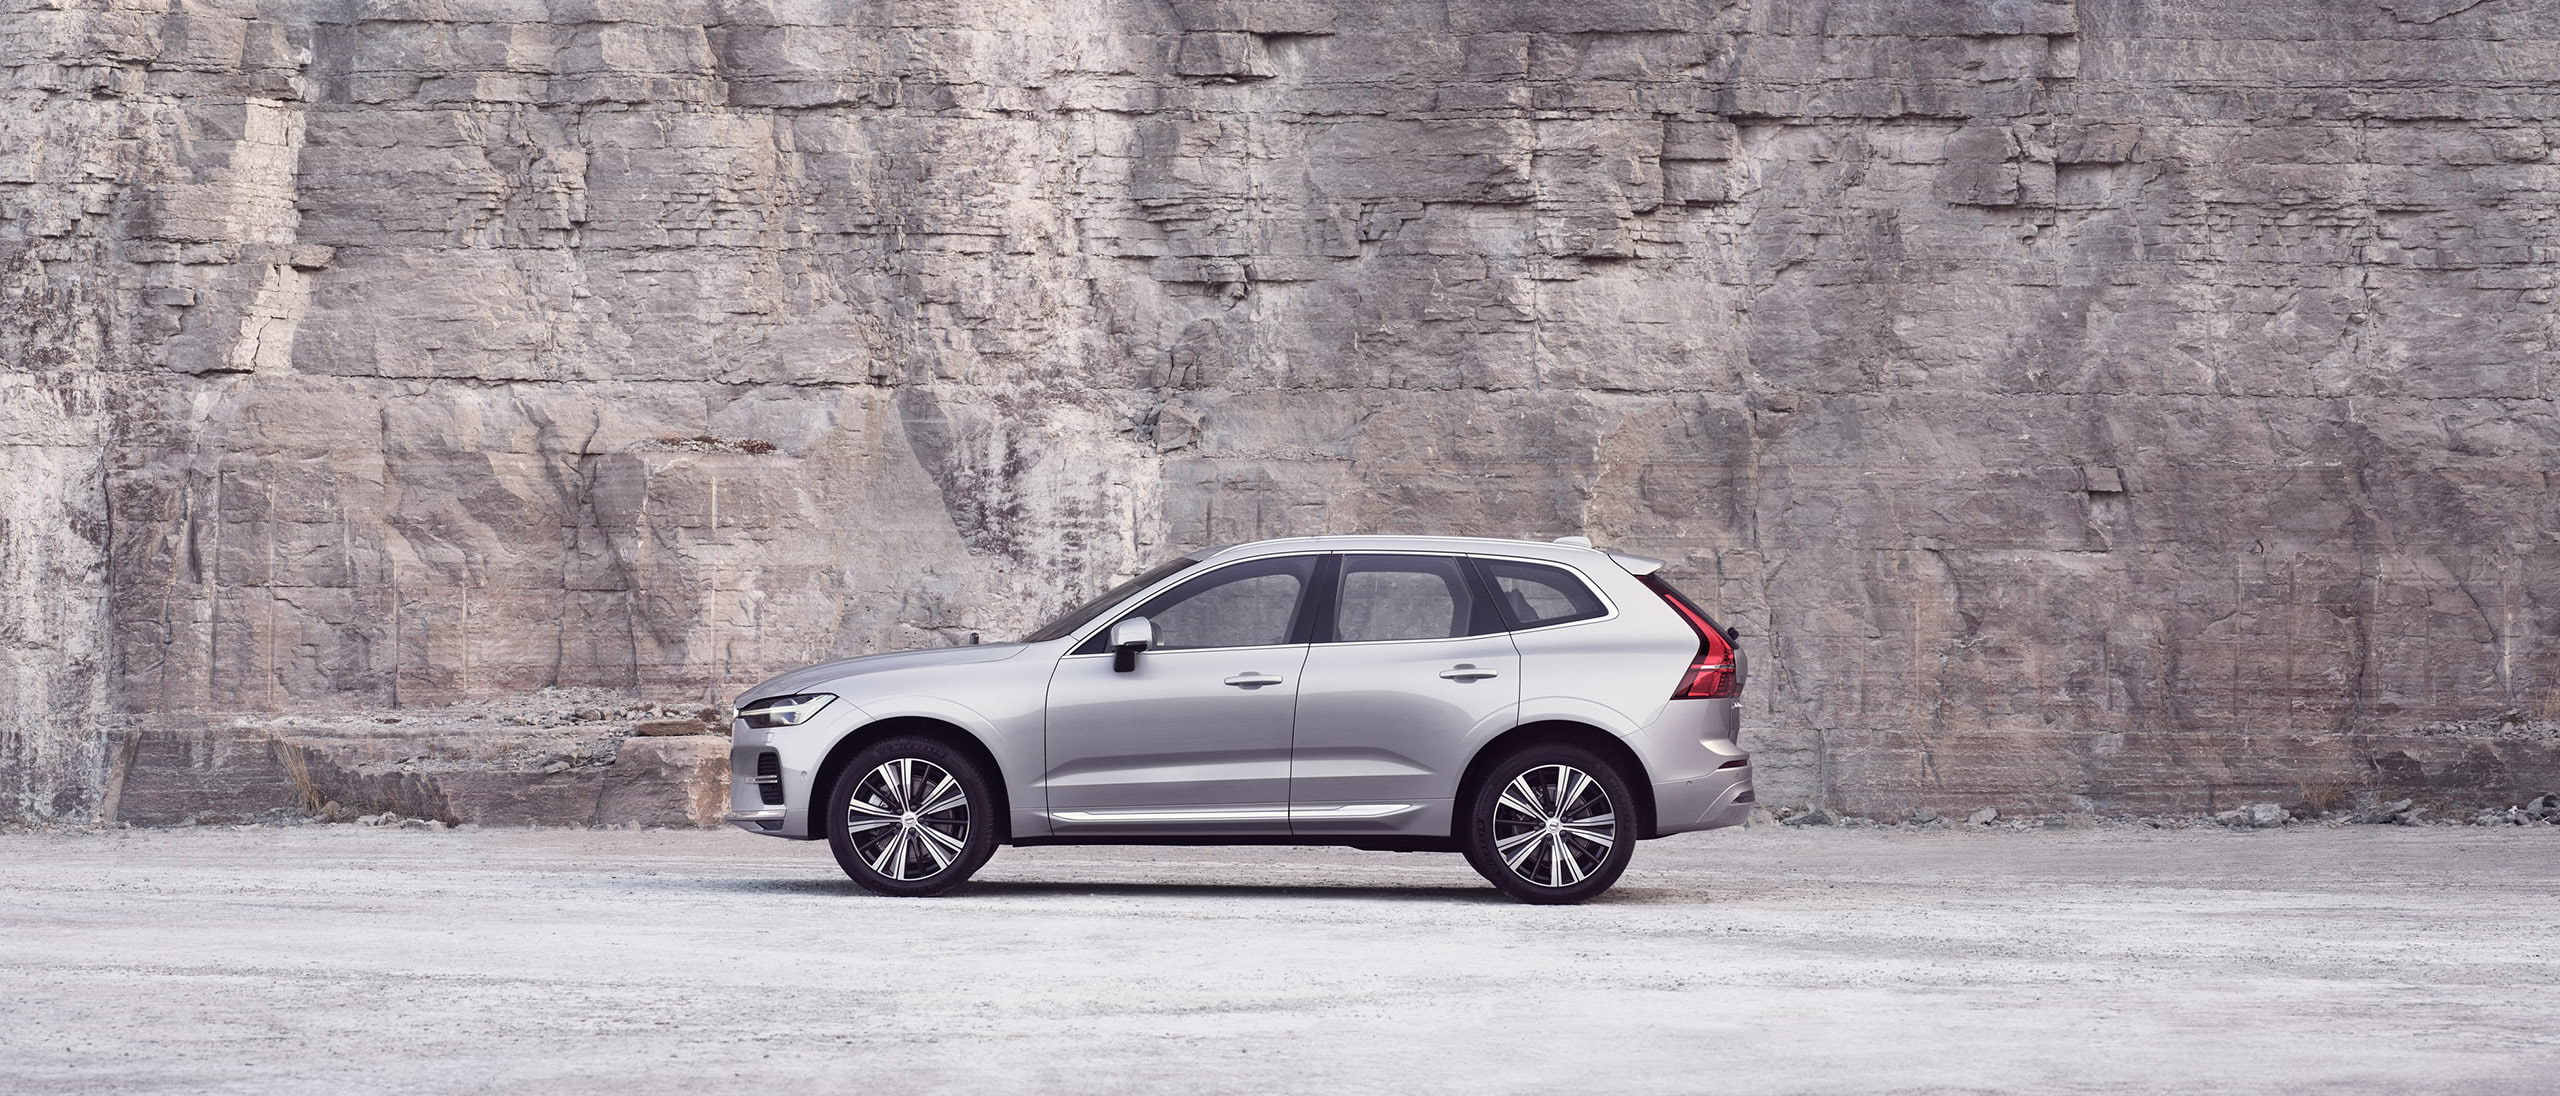 Kayalıkların önünde hareketsiz duran gümüş renkte bir Volvo XC60.